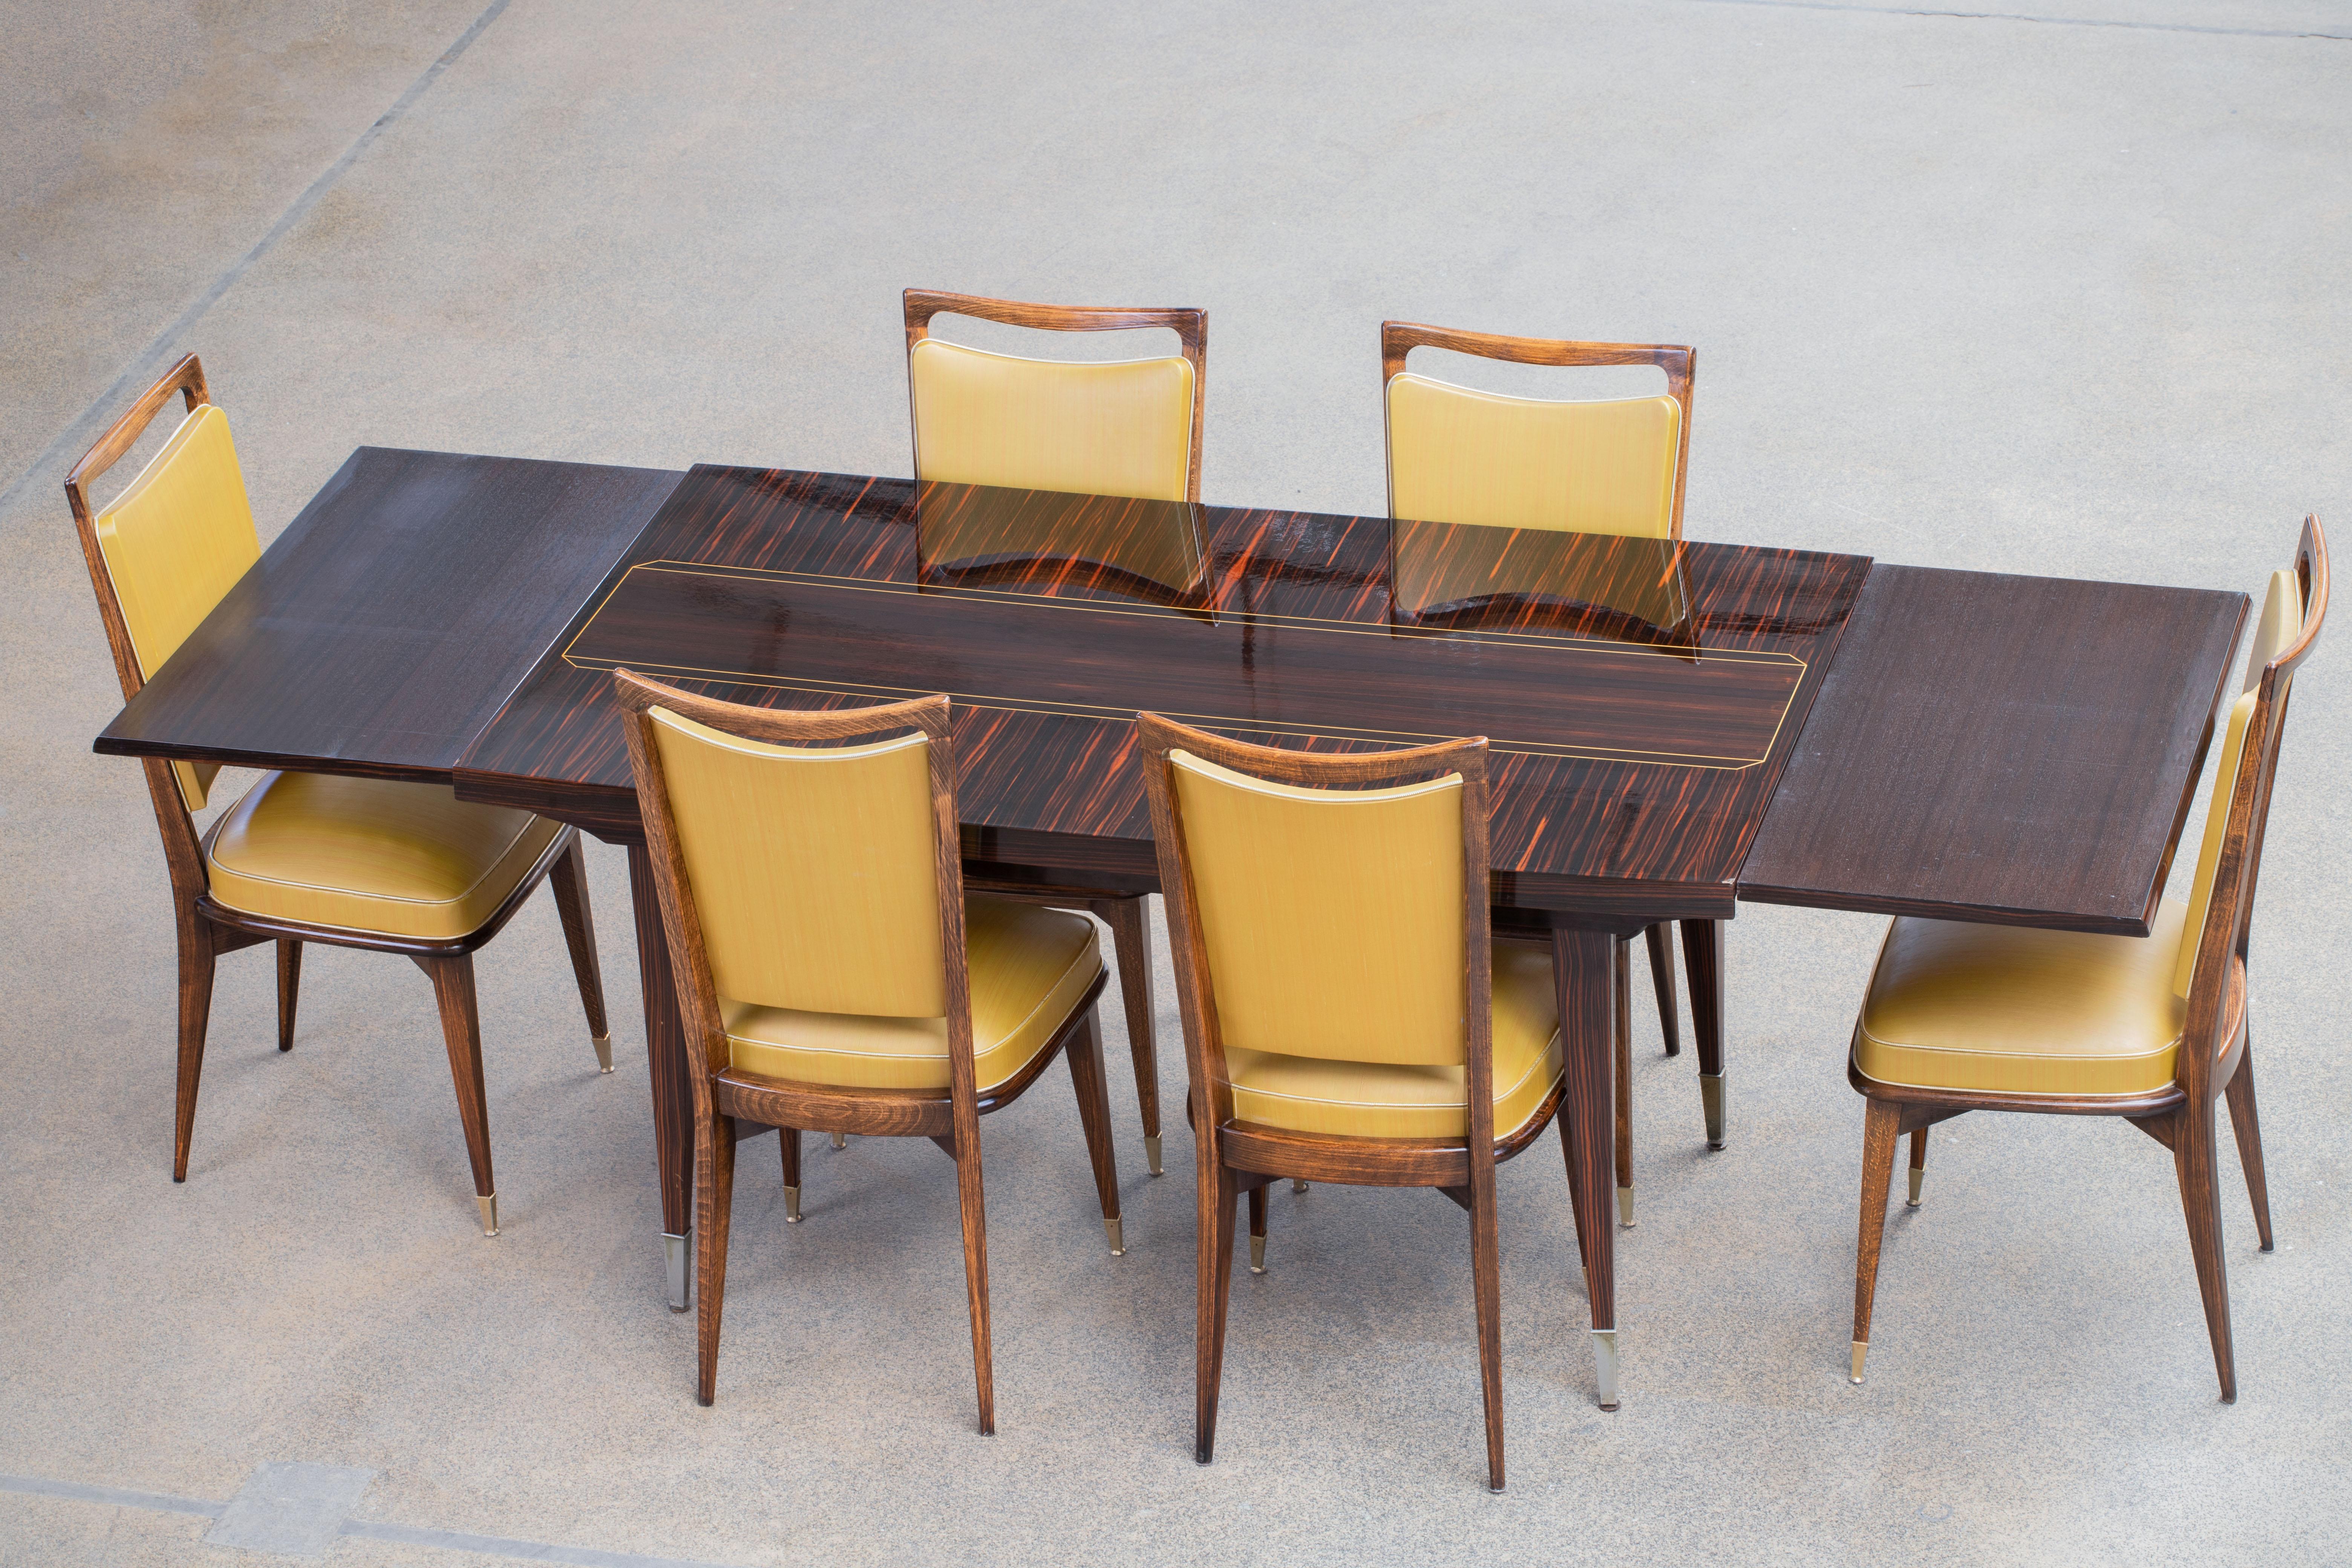 Table à manger, Macassar, France, années 1940.

Majestueuse table centrale en Macassar. Cette table Art déco témoigne d'un grand savoir-faire. La base et les pieds sont magnifiquement détaillés. Cette table a une apparence élégante. Ce design